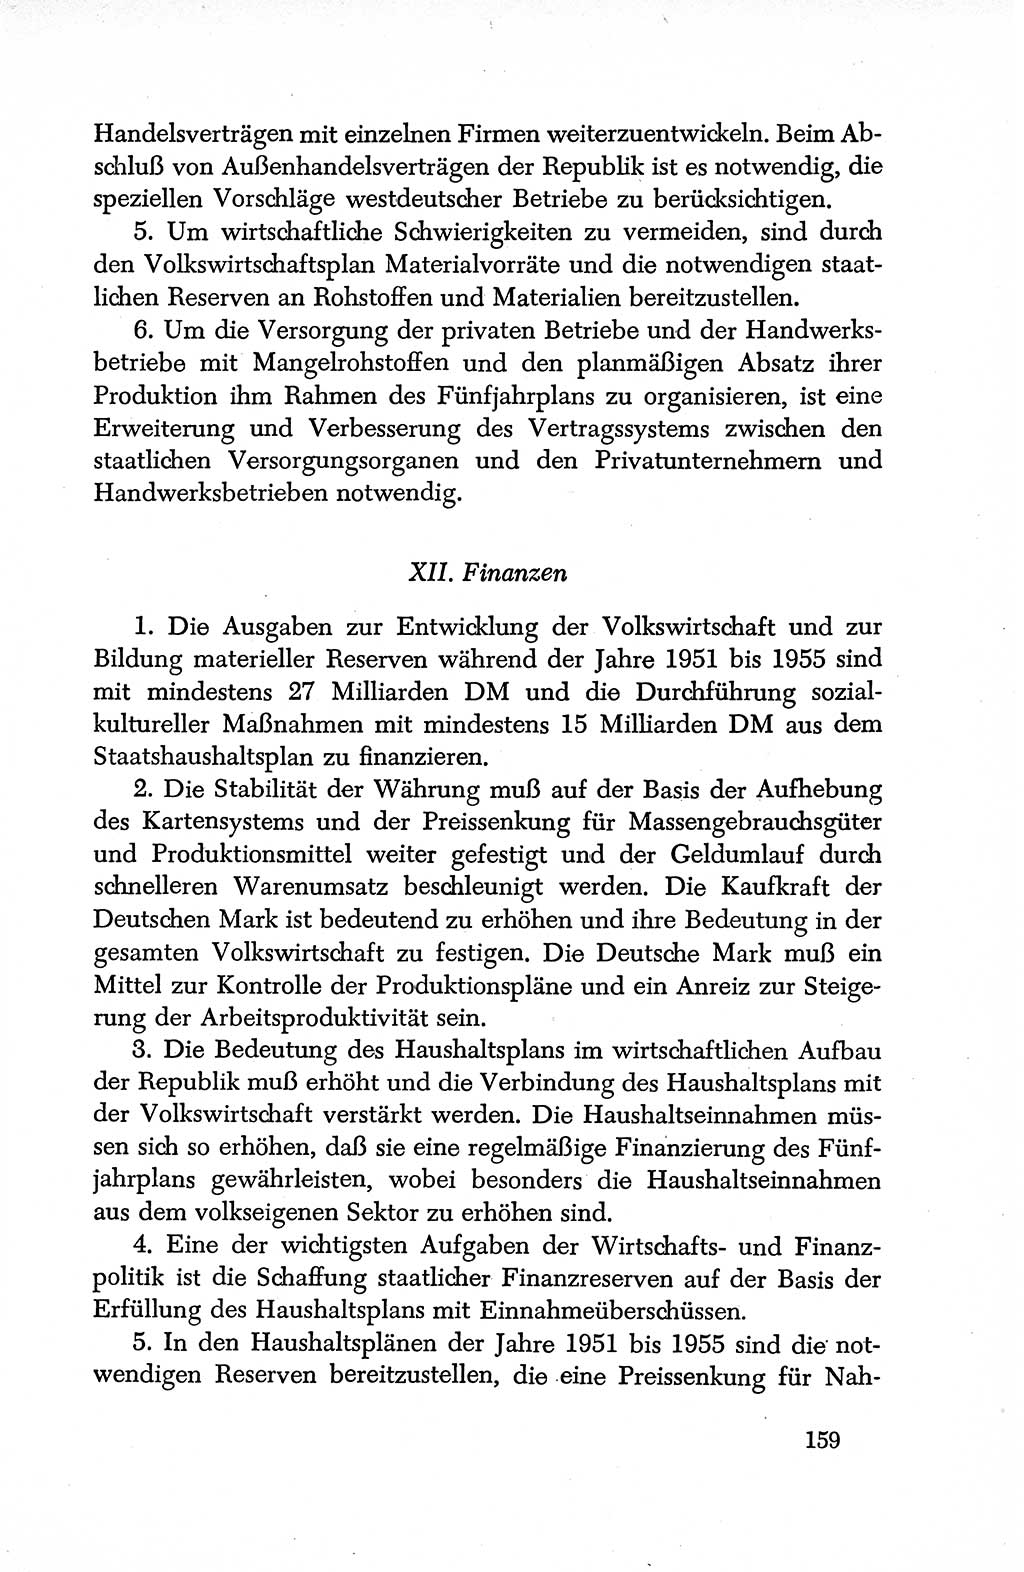 Dokumente der Sozialistischen Einheitspartei Deutschlands (SED) [Deutsche Demokratische Republik (DDR)] 1950-1952, Seite 159 (Dok. SED DDR 1950-1952, S. 159)